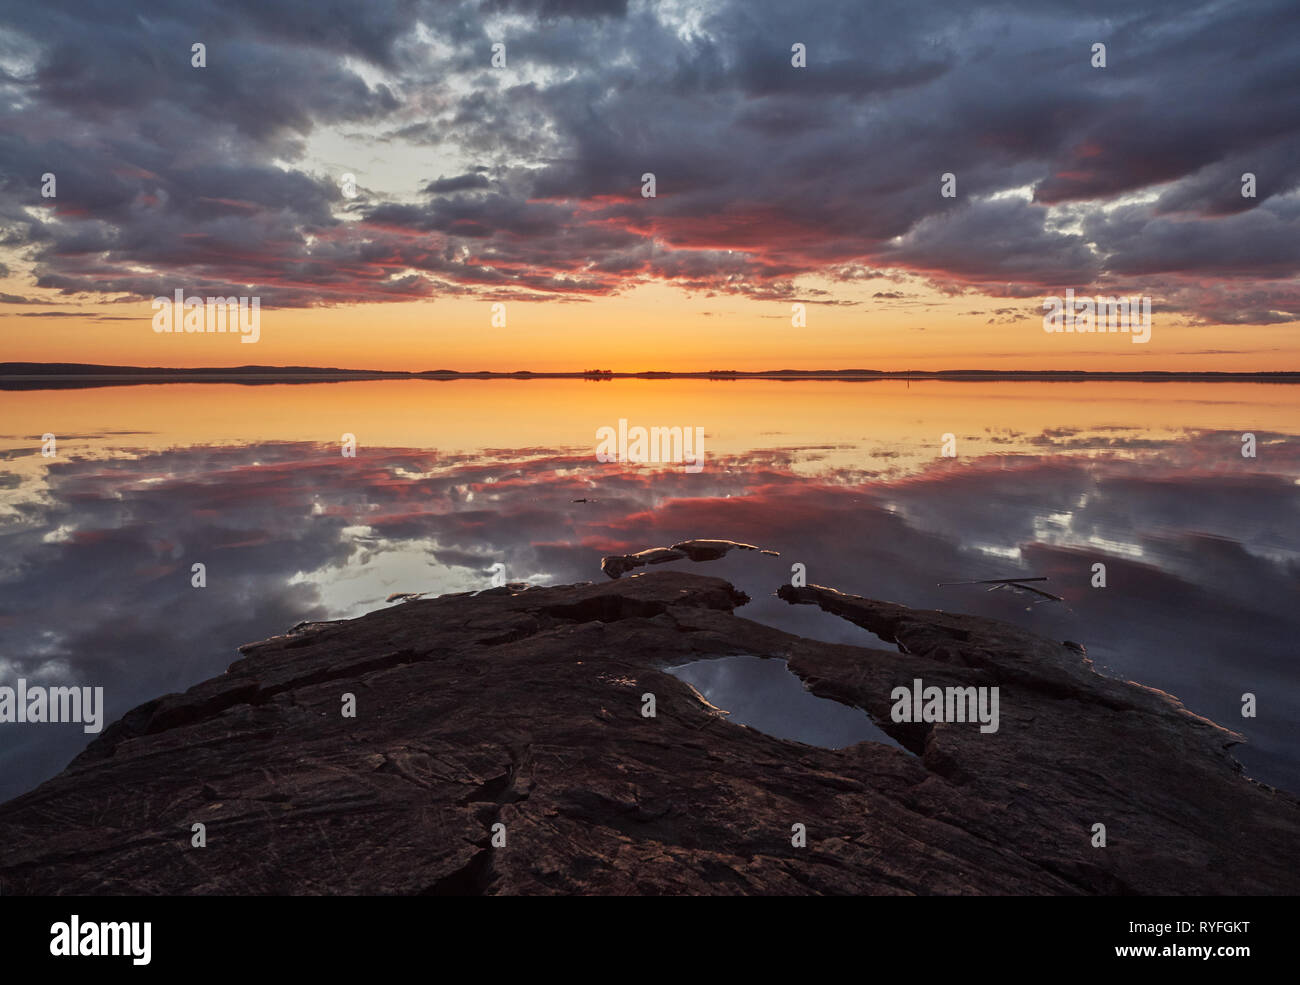 Sonnenuntergang mit Crimson Red Farbe in die Wolken und die Felsen am Ufer. Dramatische Reflexion der Sonne im Wasser eines Sees in Finnland. Stockfoto